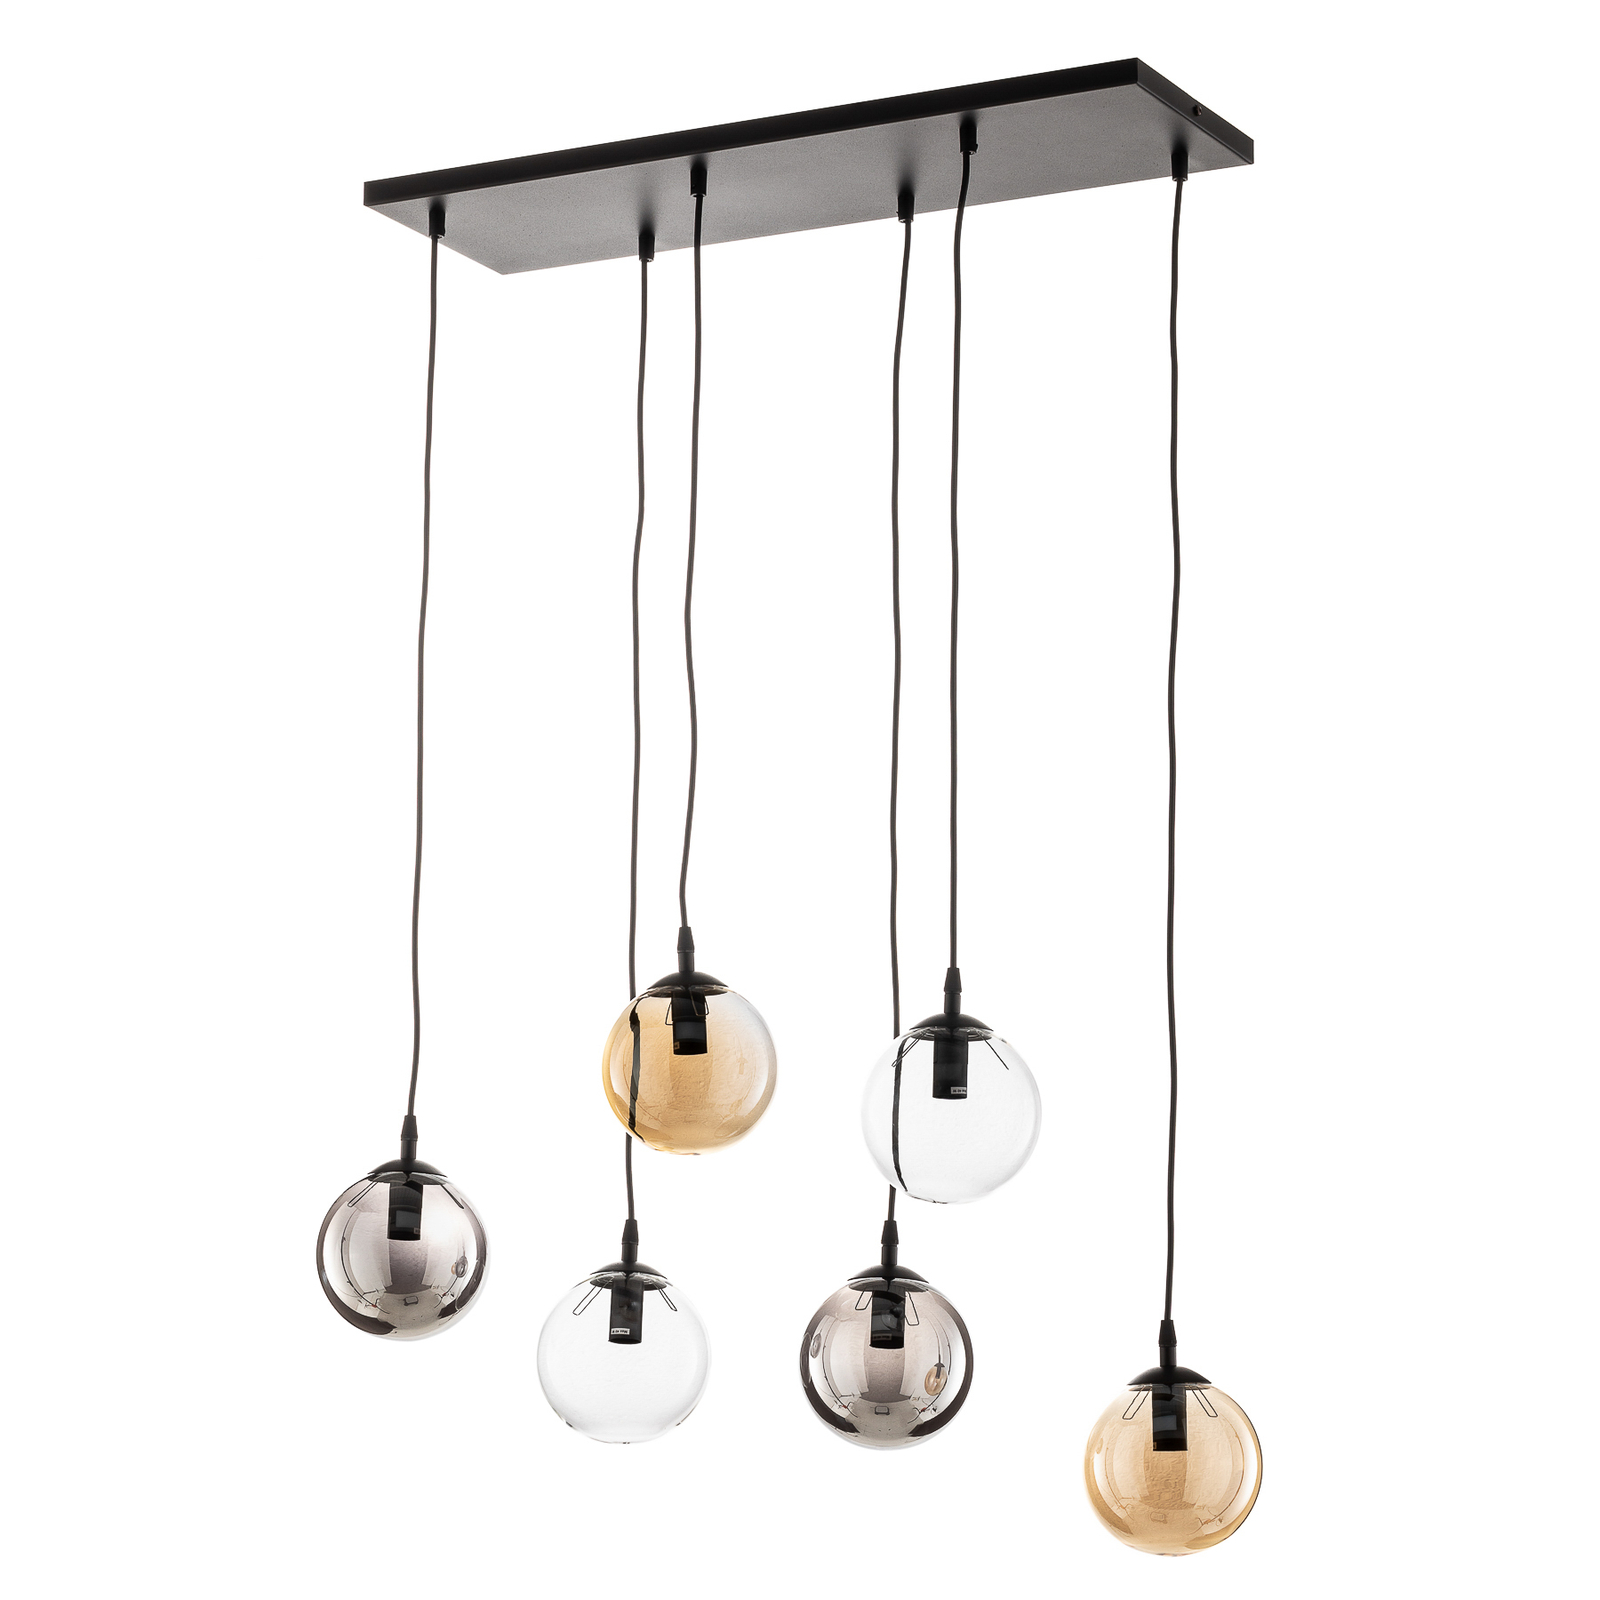 Glassy hanglamp 6-lamps recht grijs/amber/helder